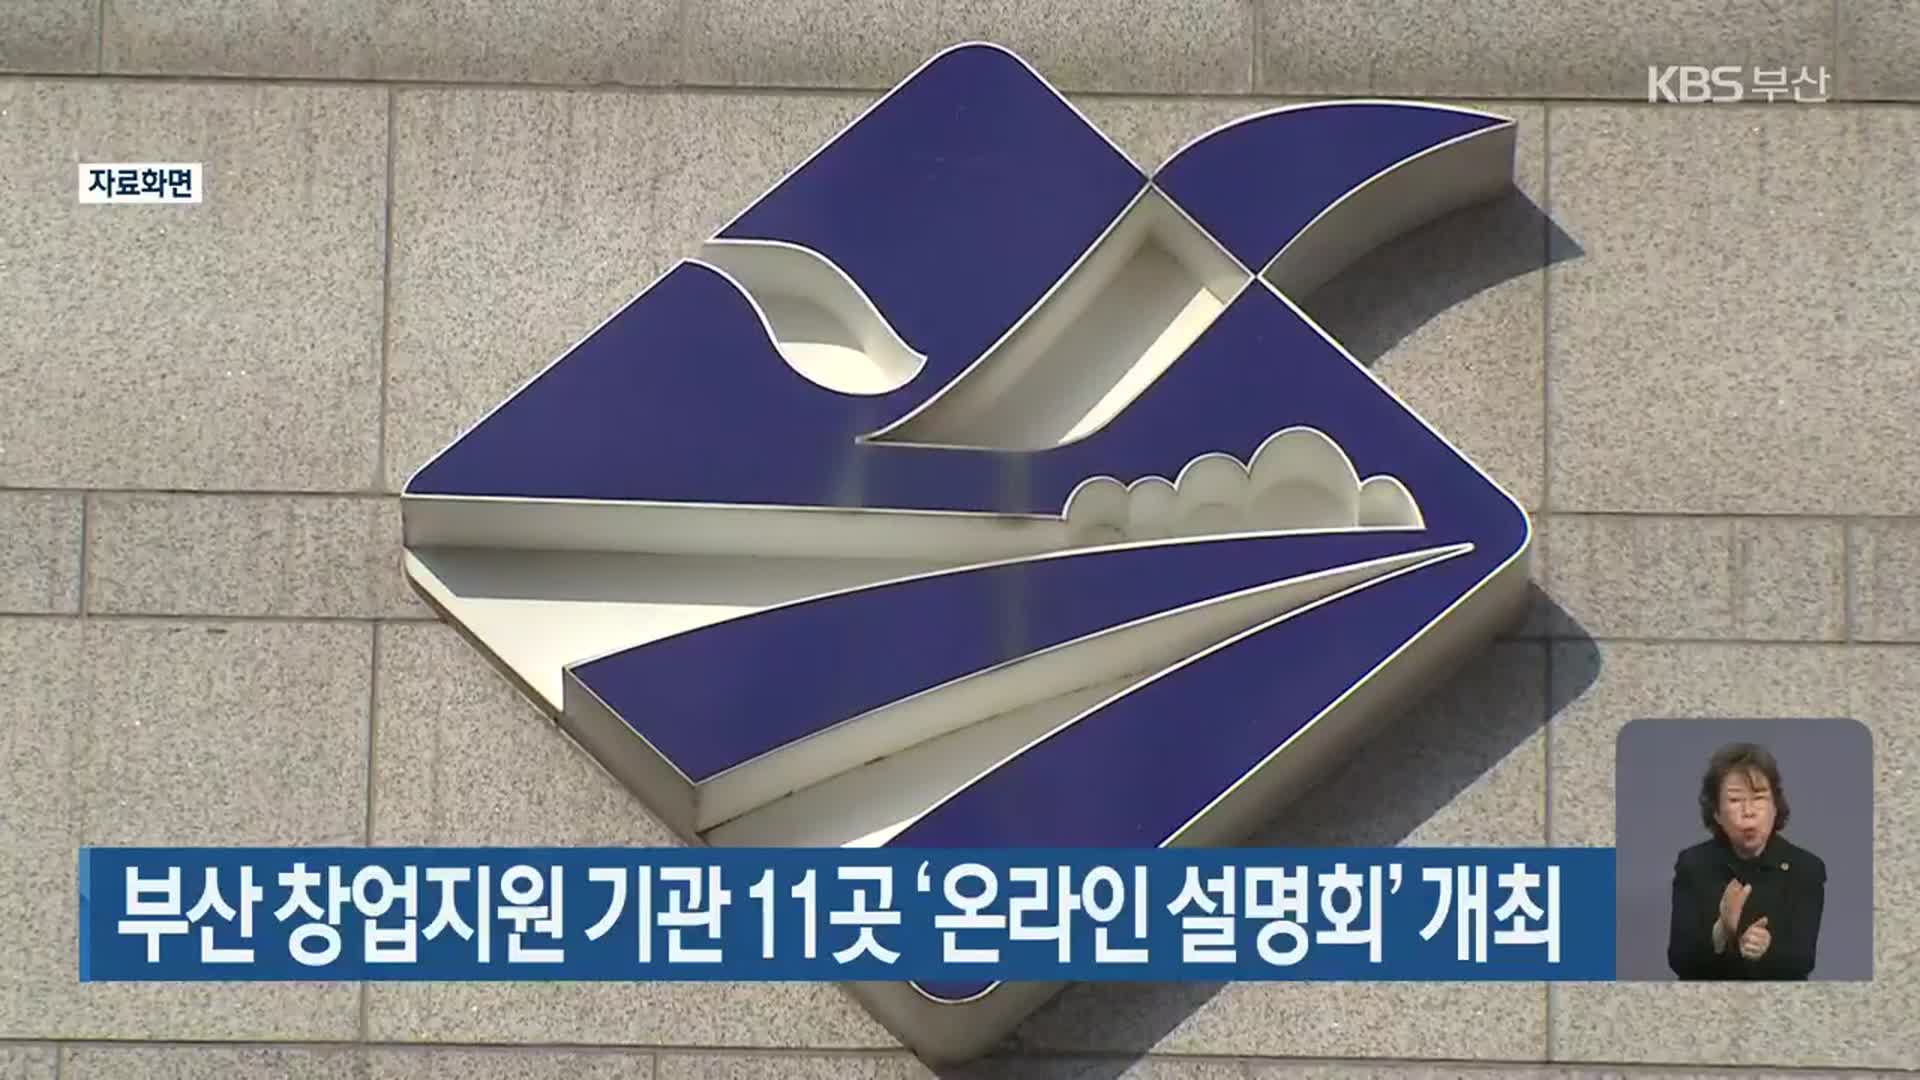 부산 창업지원 기관 11곳 ‘온라인 설명회’ 개최